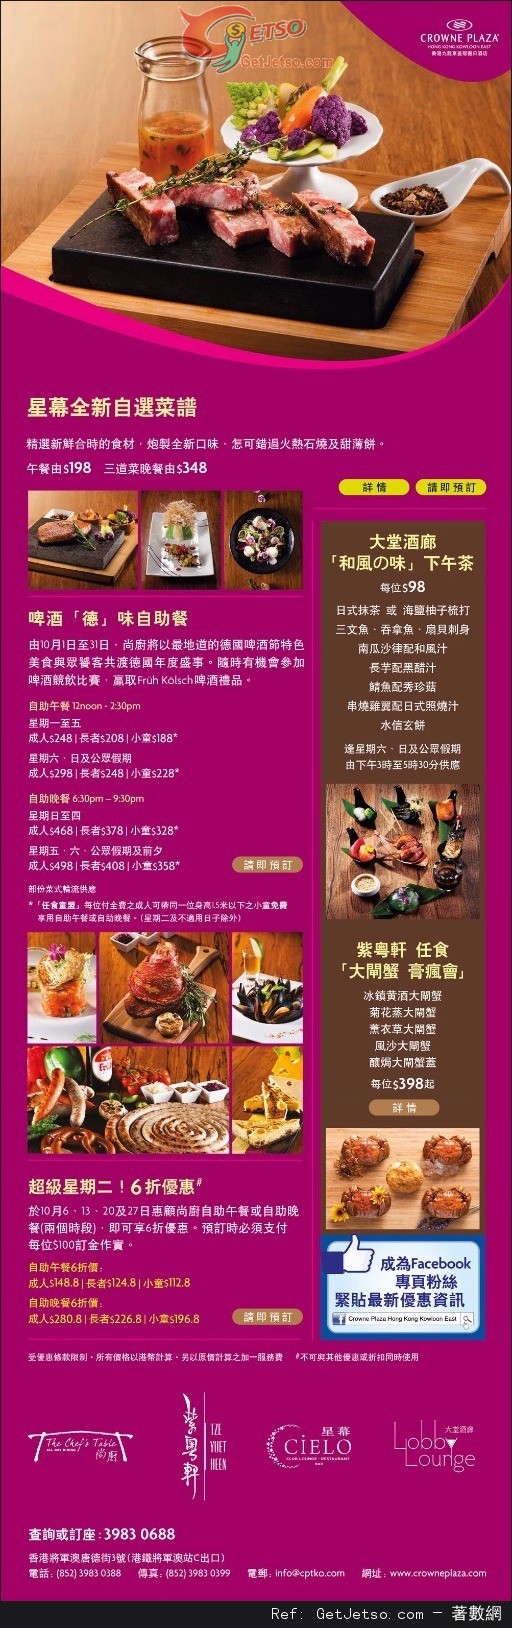 九龍東皇冠假日酒店超級星期二自助餐6折優惠(至15年10月27日)圖片1